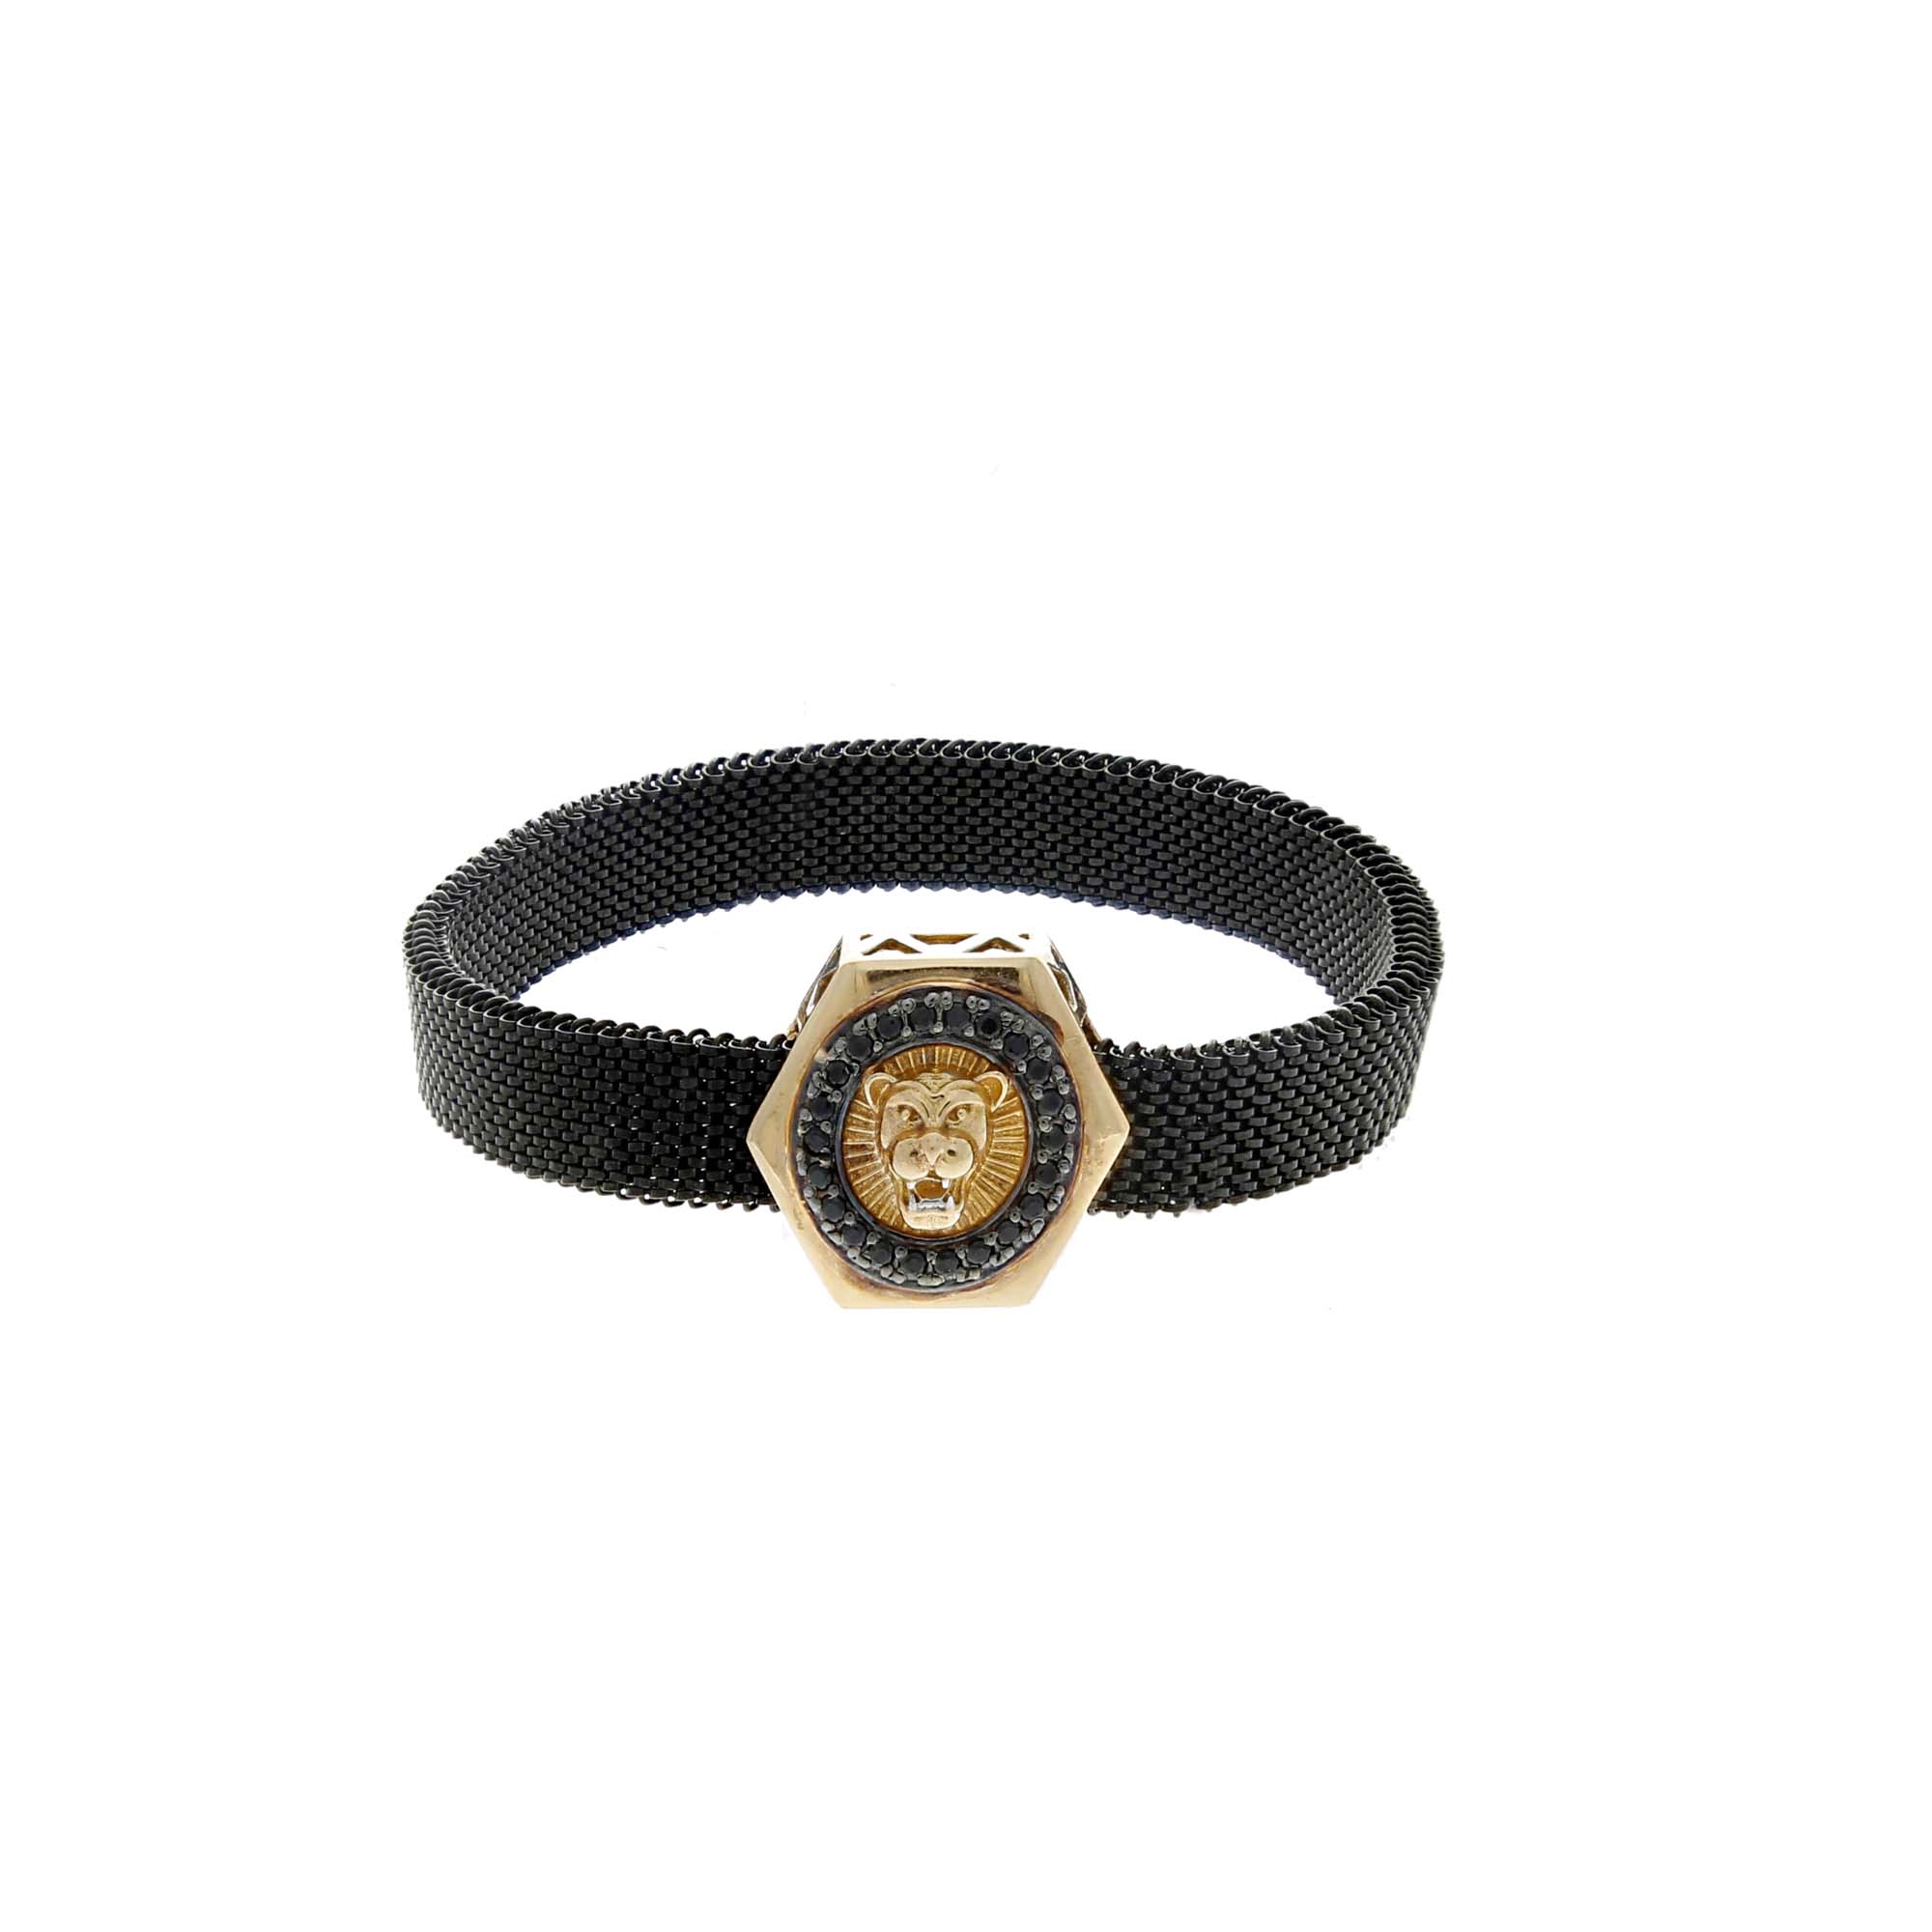 black bracelet gold for men